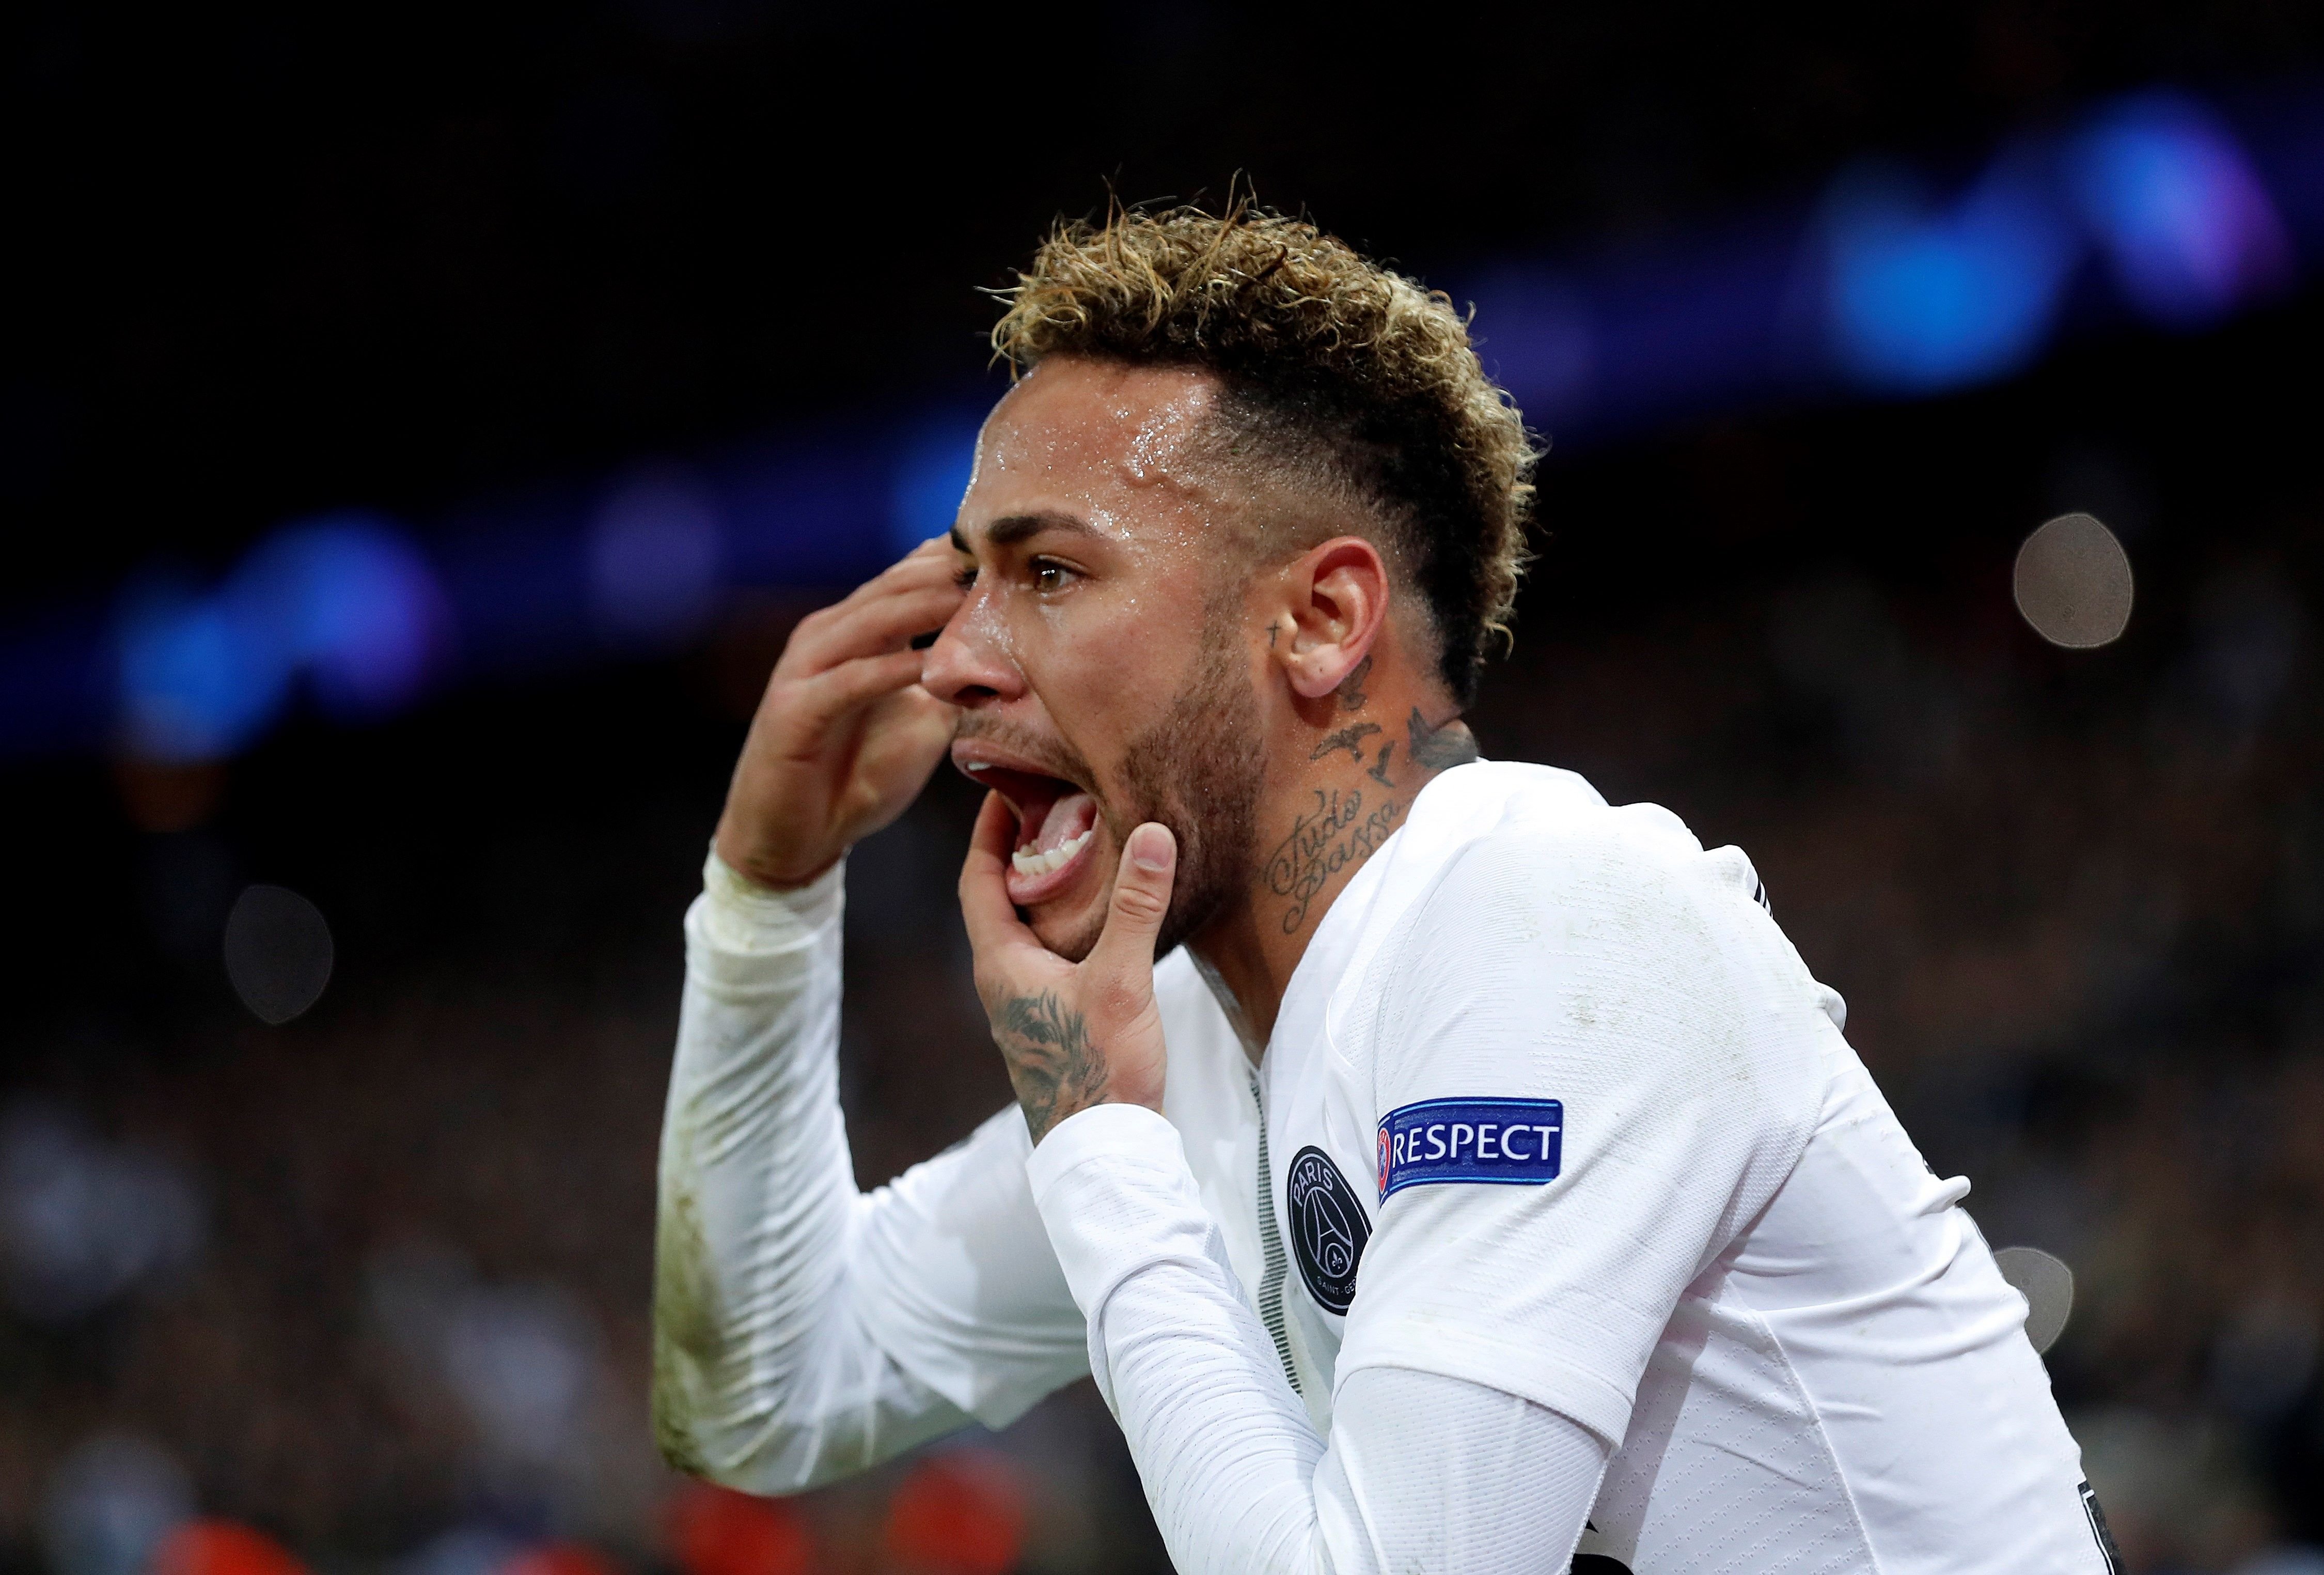 VÍDEO | La afición del PSG insulta a Neymar: "Hijo de p..."